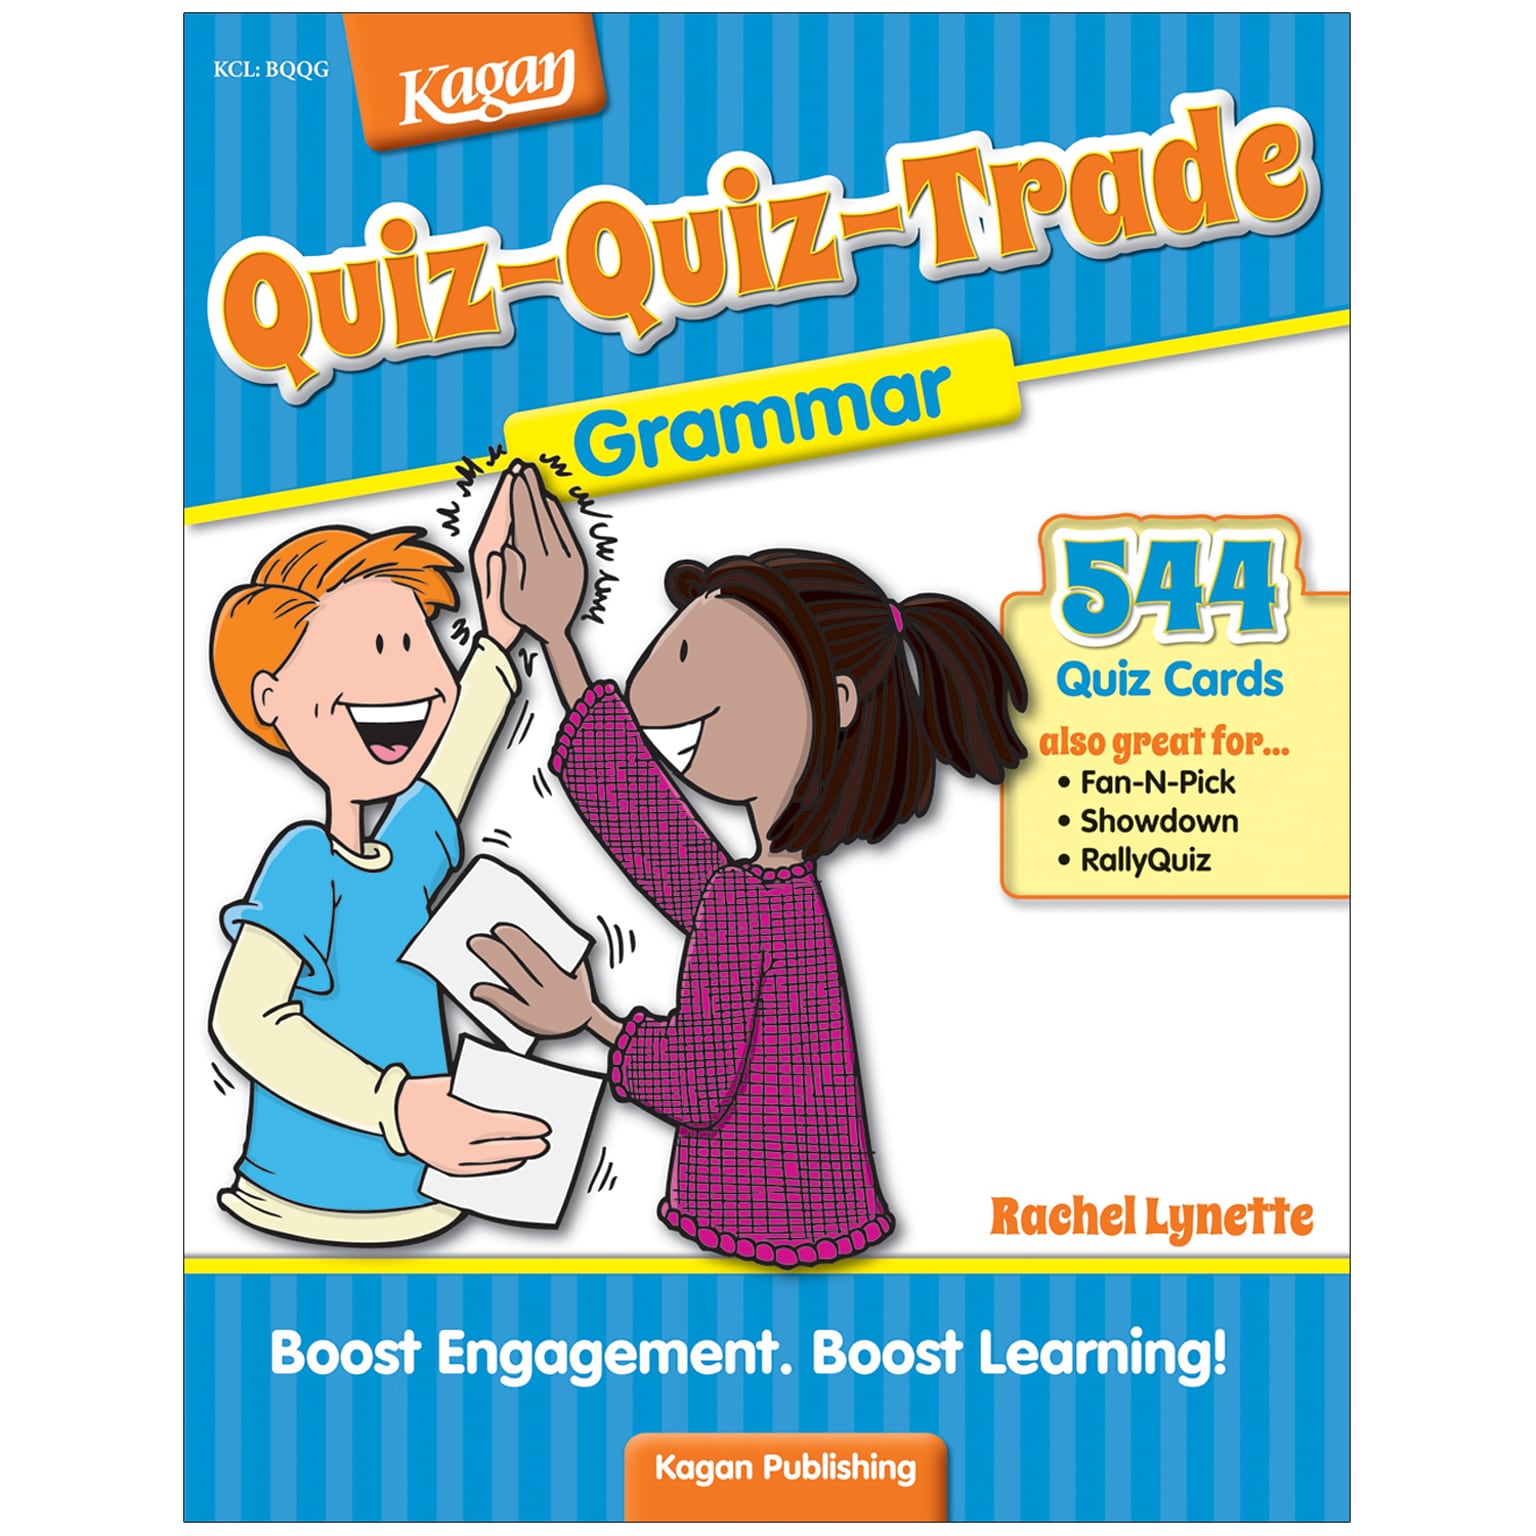 Kagan Publishing Grammar, Quiz-Quiz-Trade for Grades 2-6 (9781933445489)